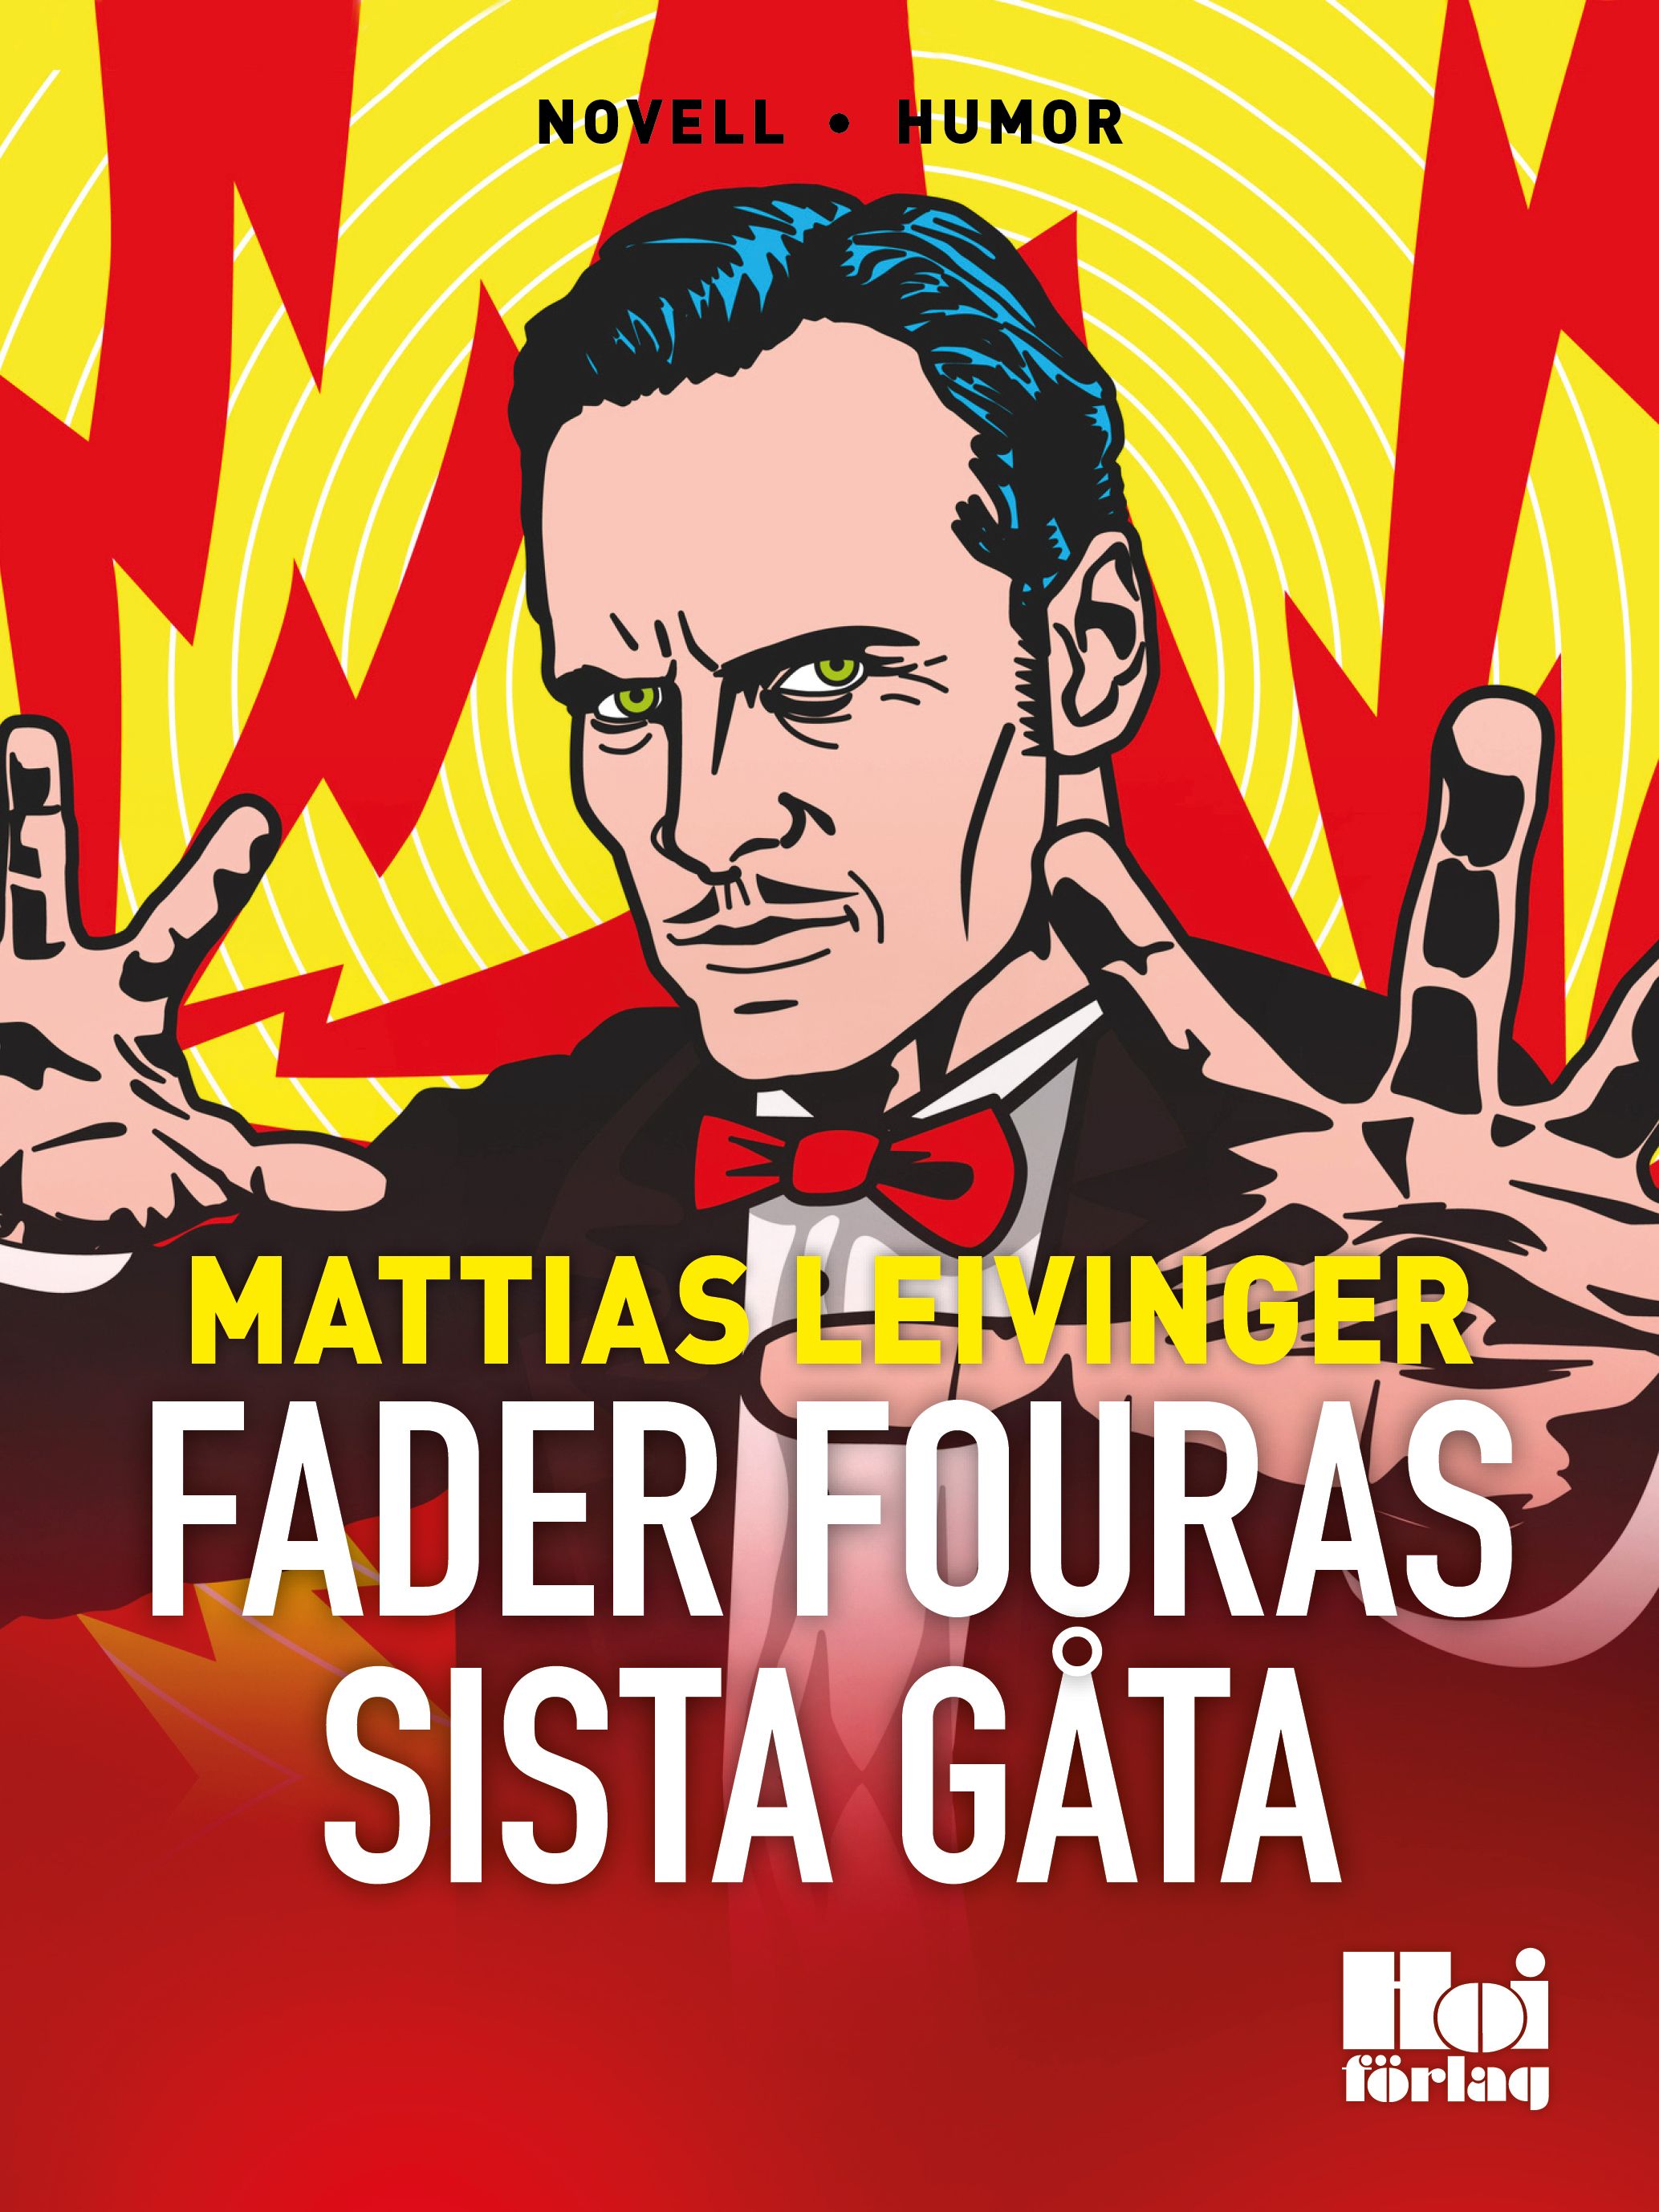 Fader Fouras sista gåta, eBook by Mattias Leivinger